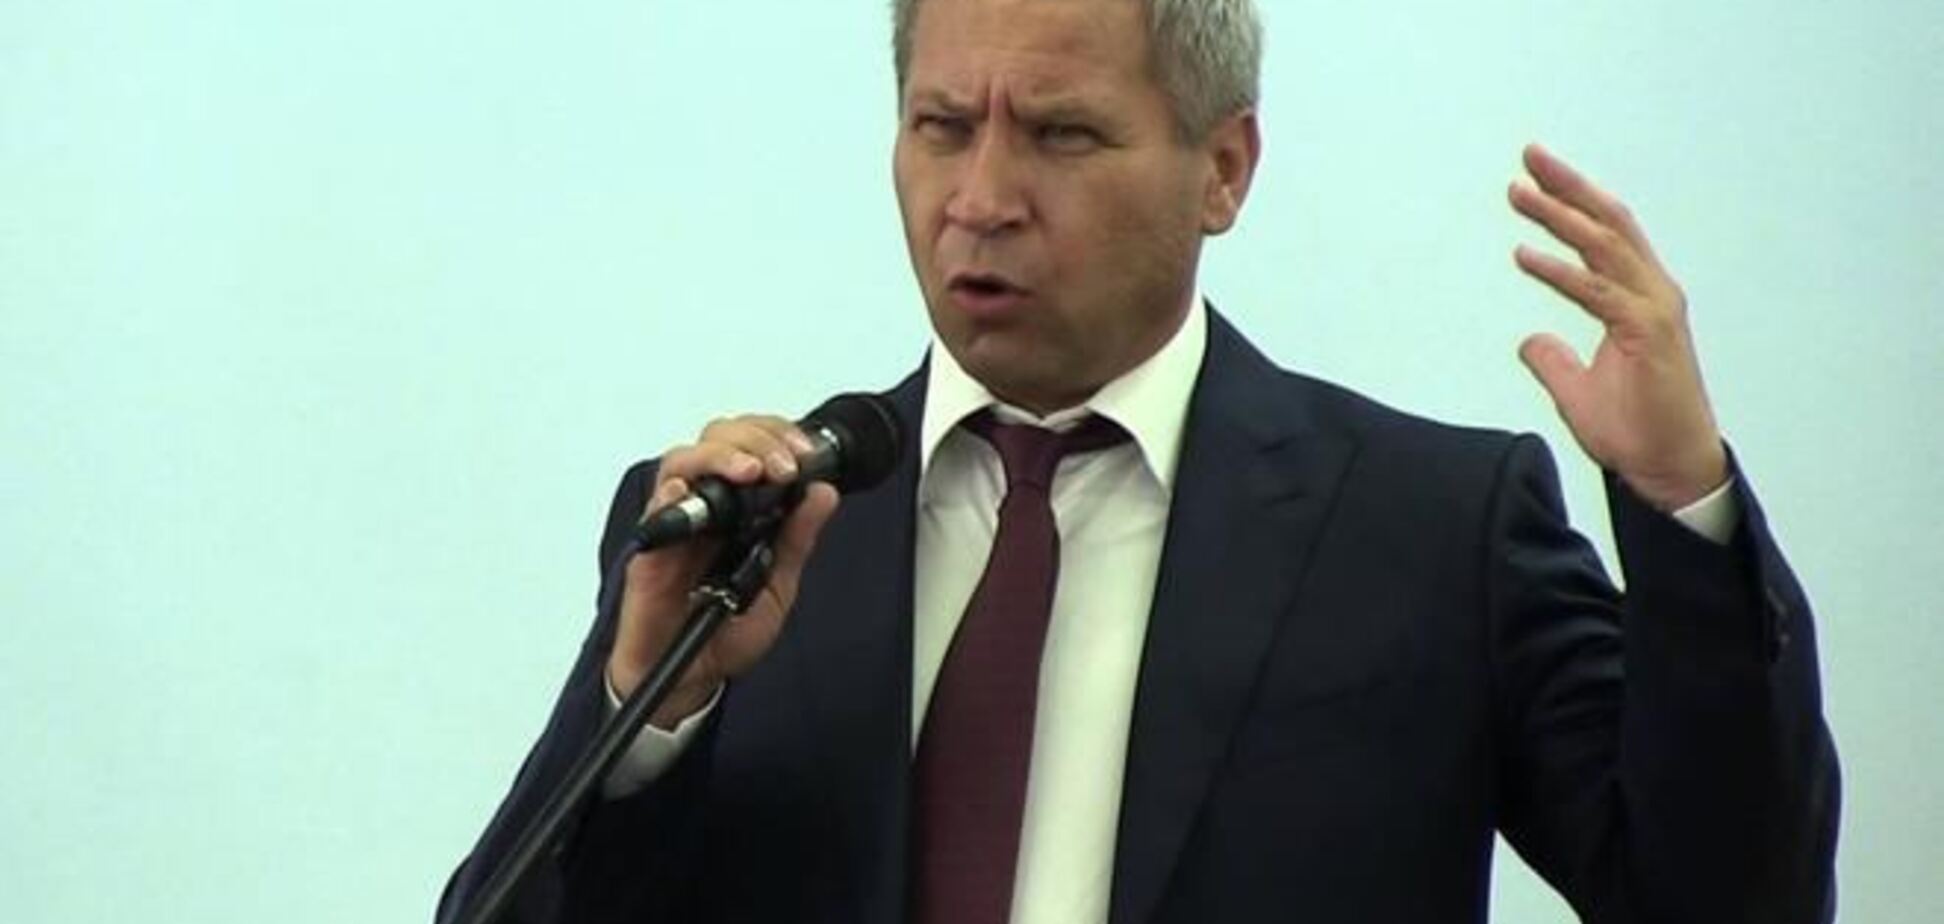 Яценюк втратив шанс стати прем'єром - регіонал